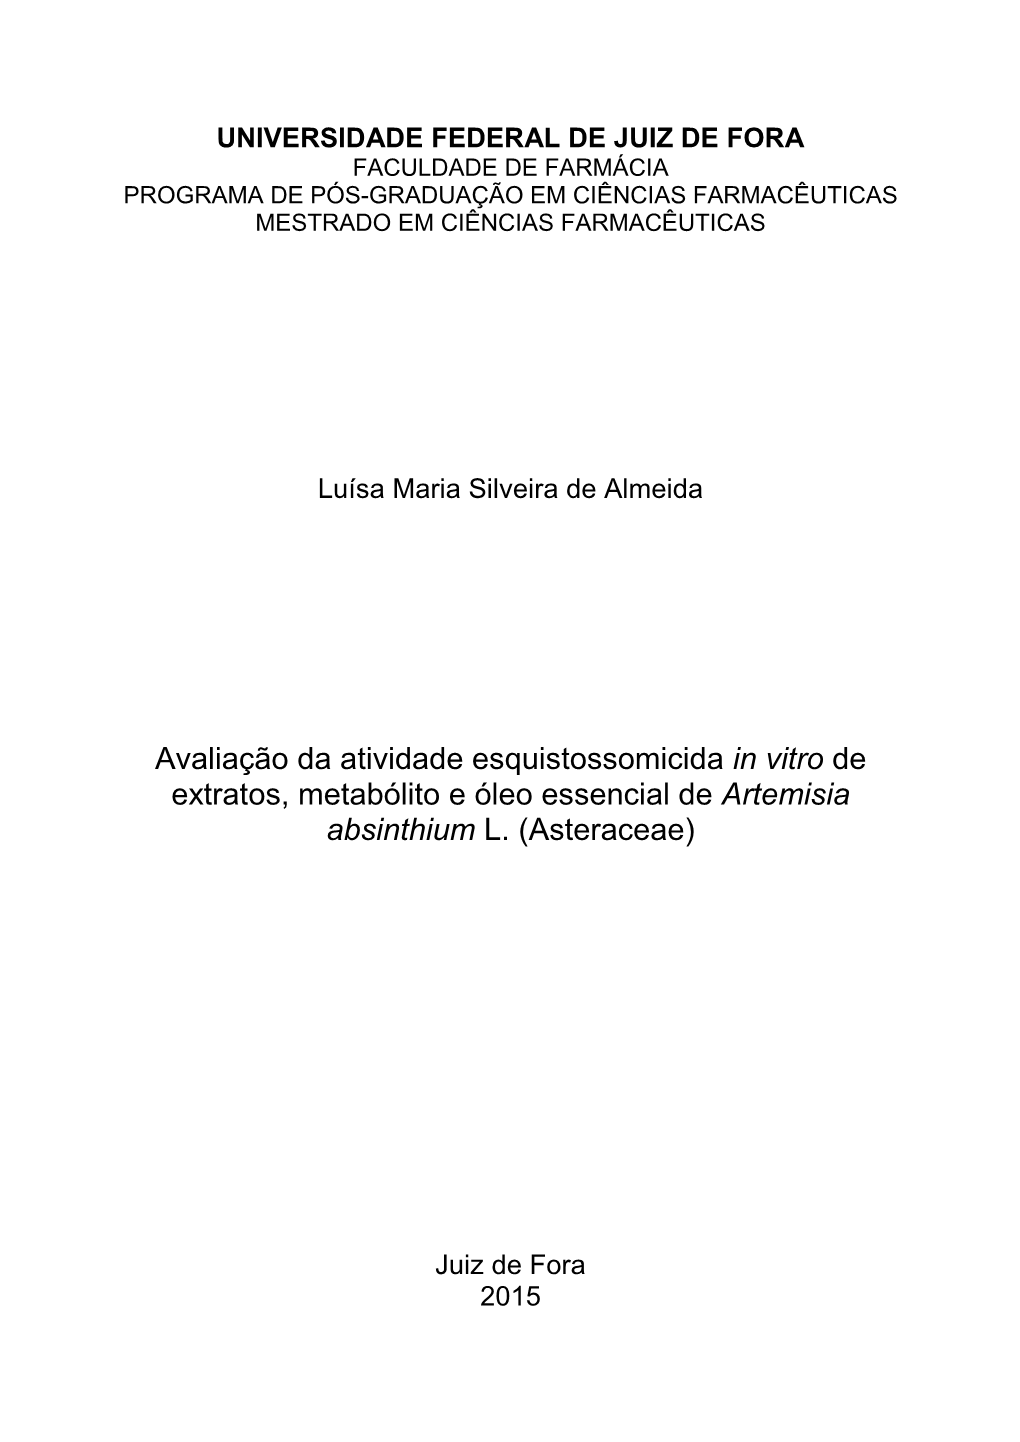 Avaliação Da Atividade Esquistossomicida in Vitro De Extratos, Metabólito E Óleo Essencial De Artemisia Absinthium L